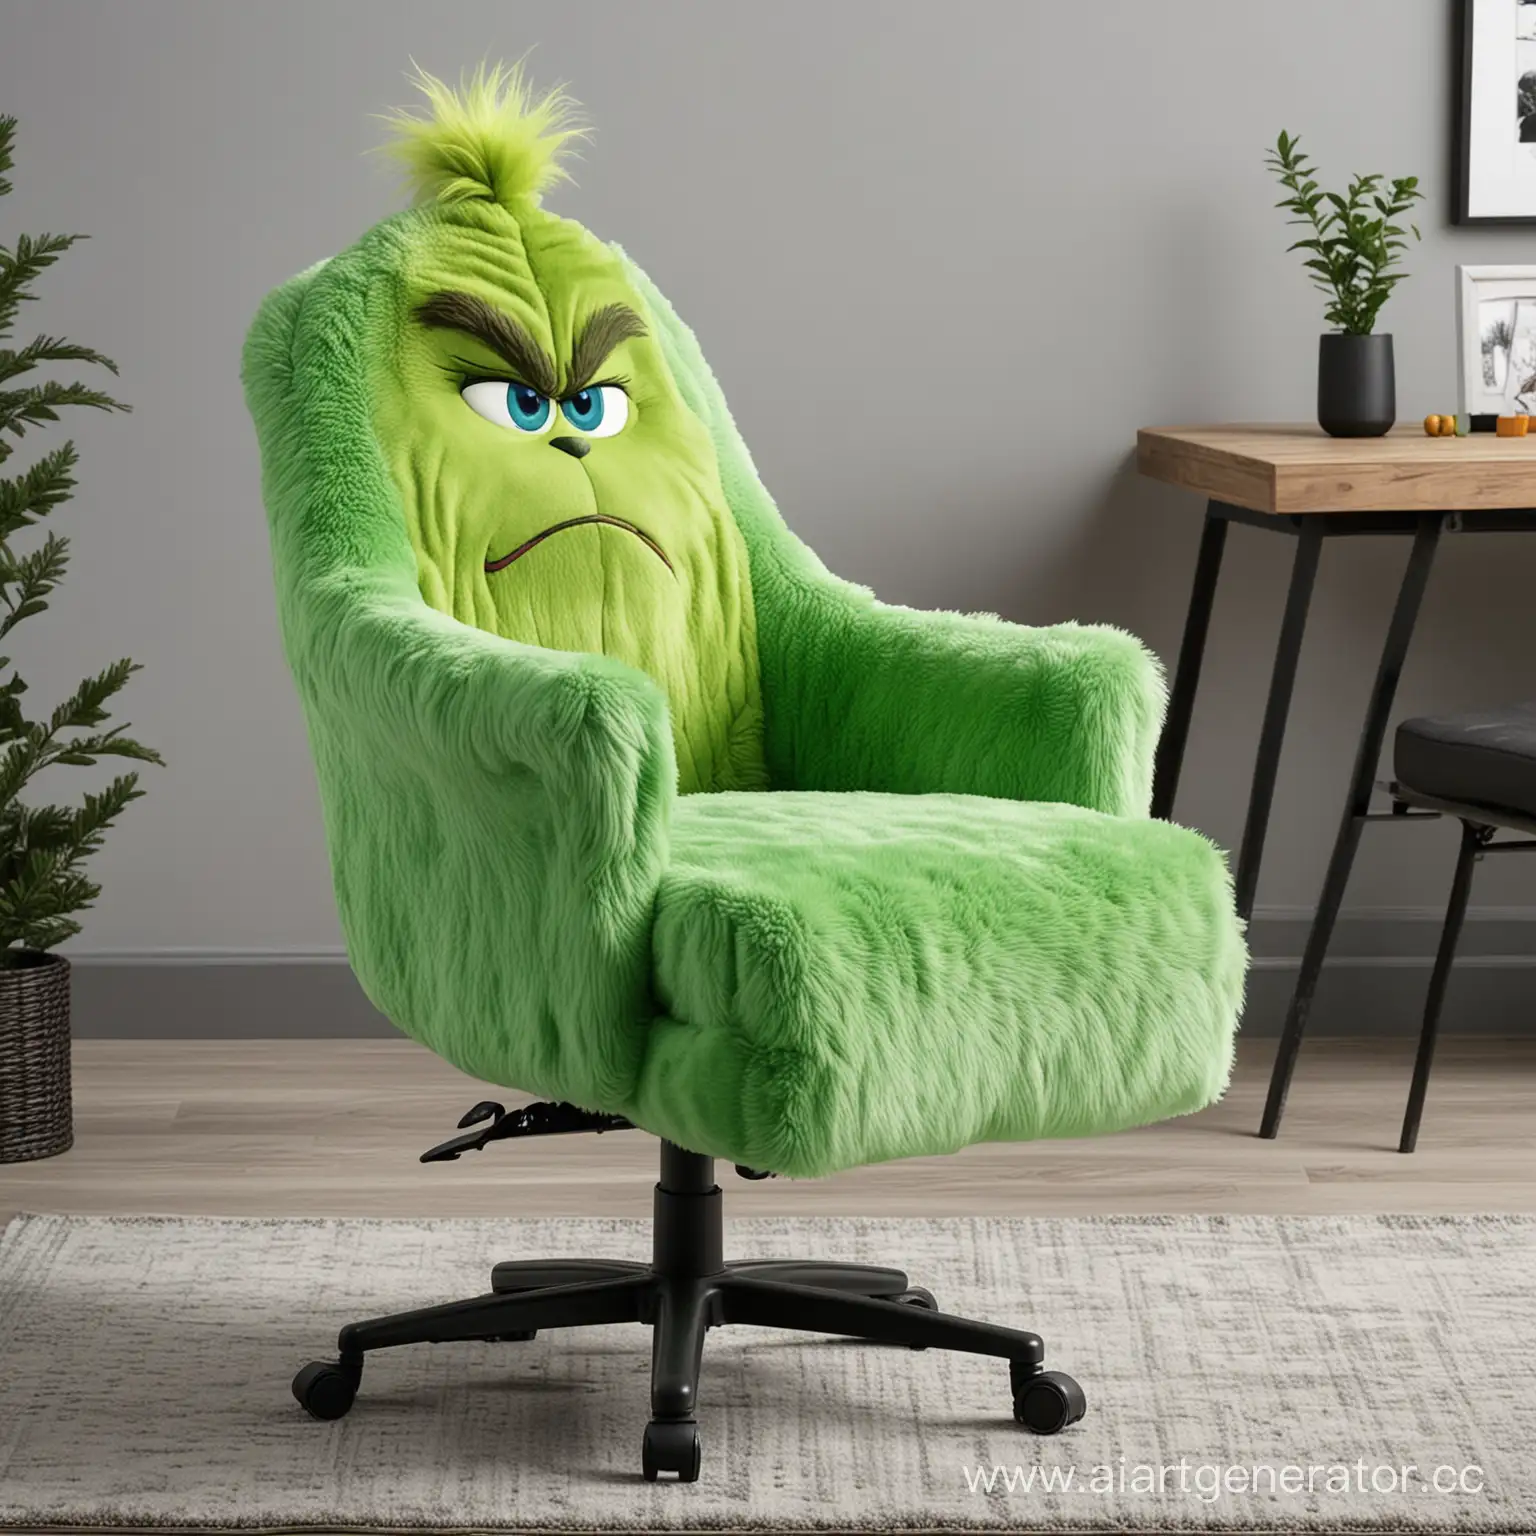 Геймерское кресло в виде мистера гринча, пушистый материал, зелёно-голубой цвет, голова утоплена в спинку кресла, высокий подъём